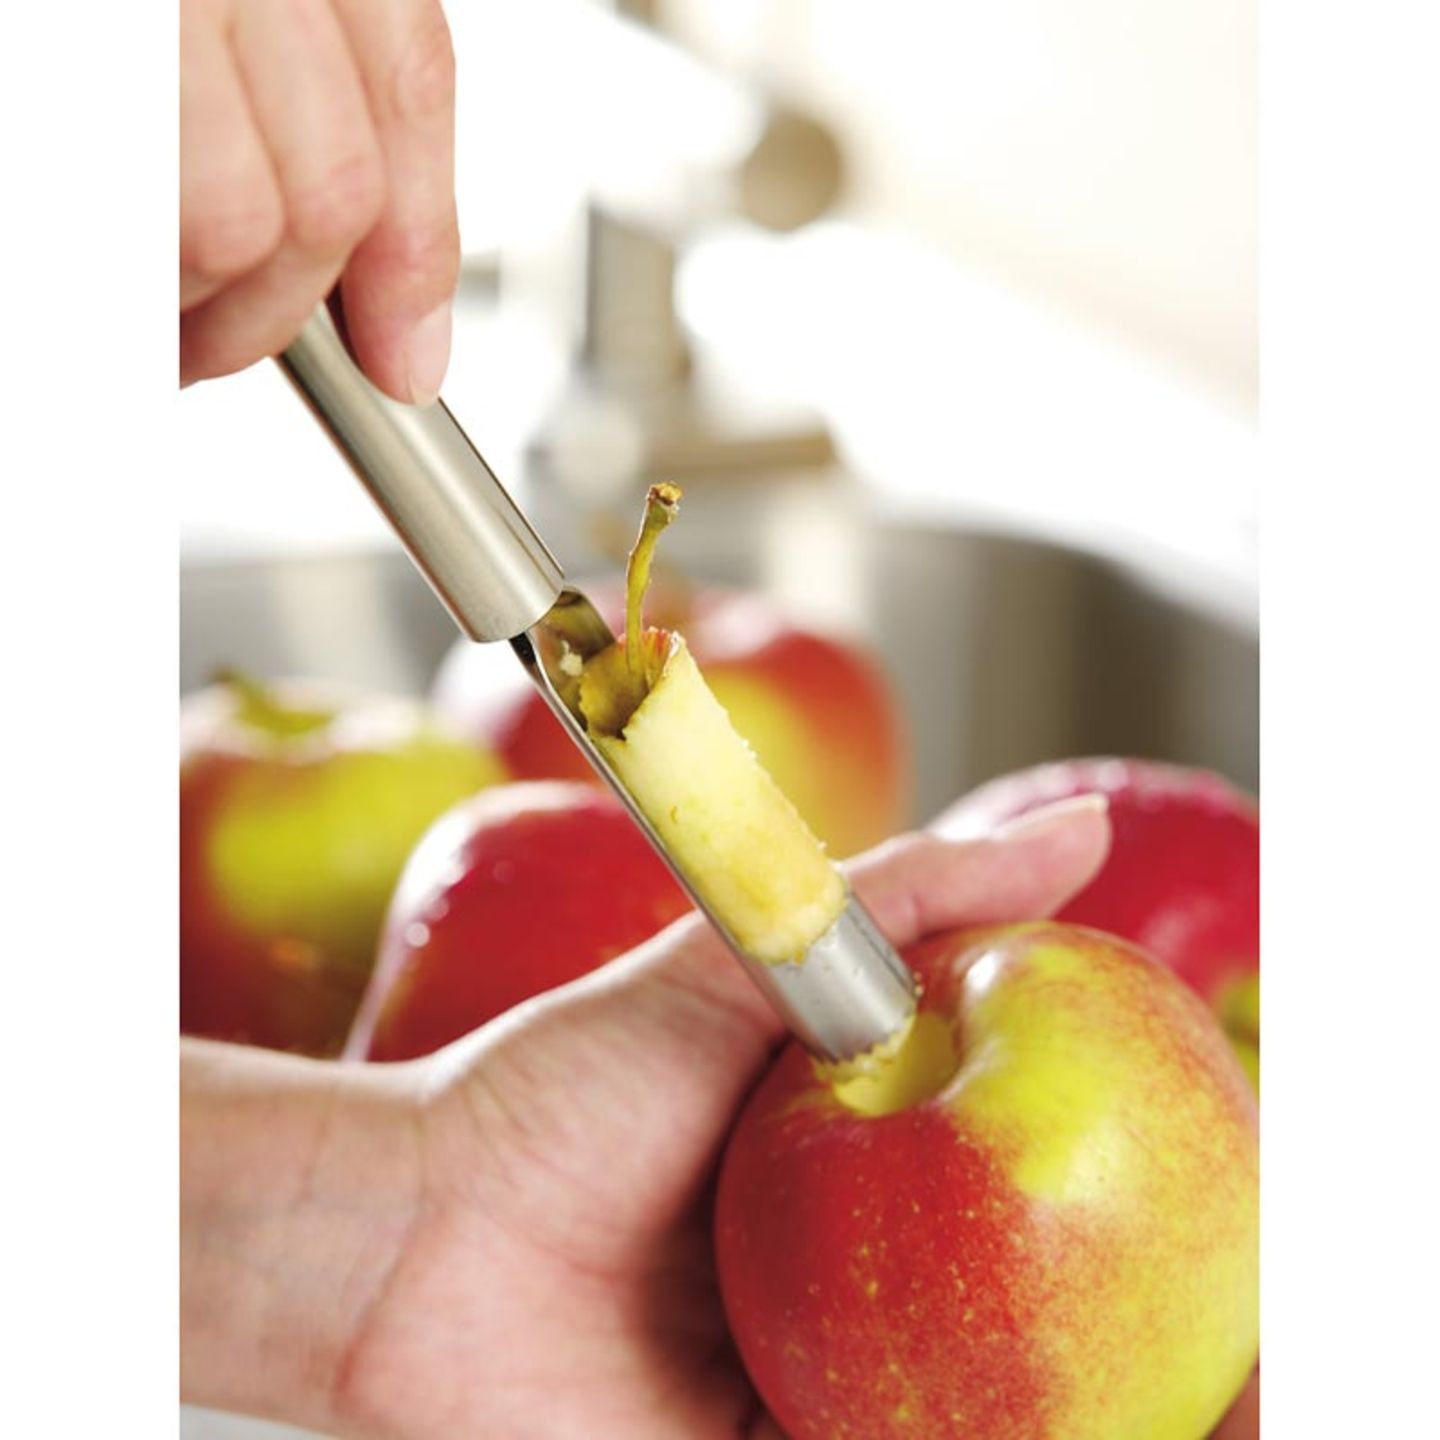 Apfelentkerner: Äpfel vorbereiten